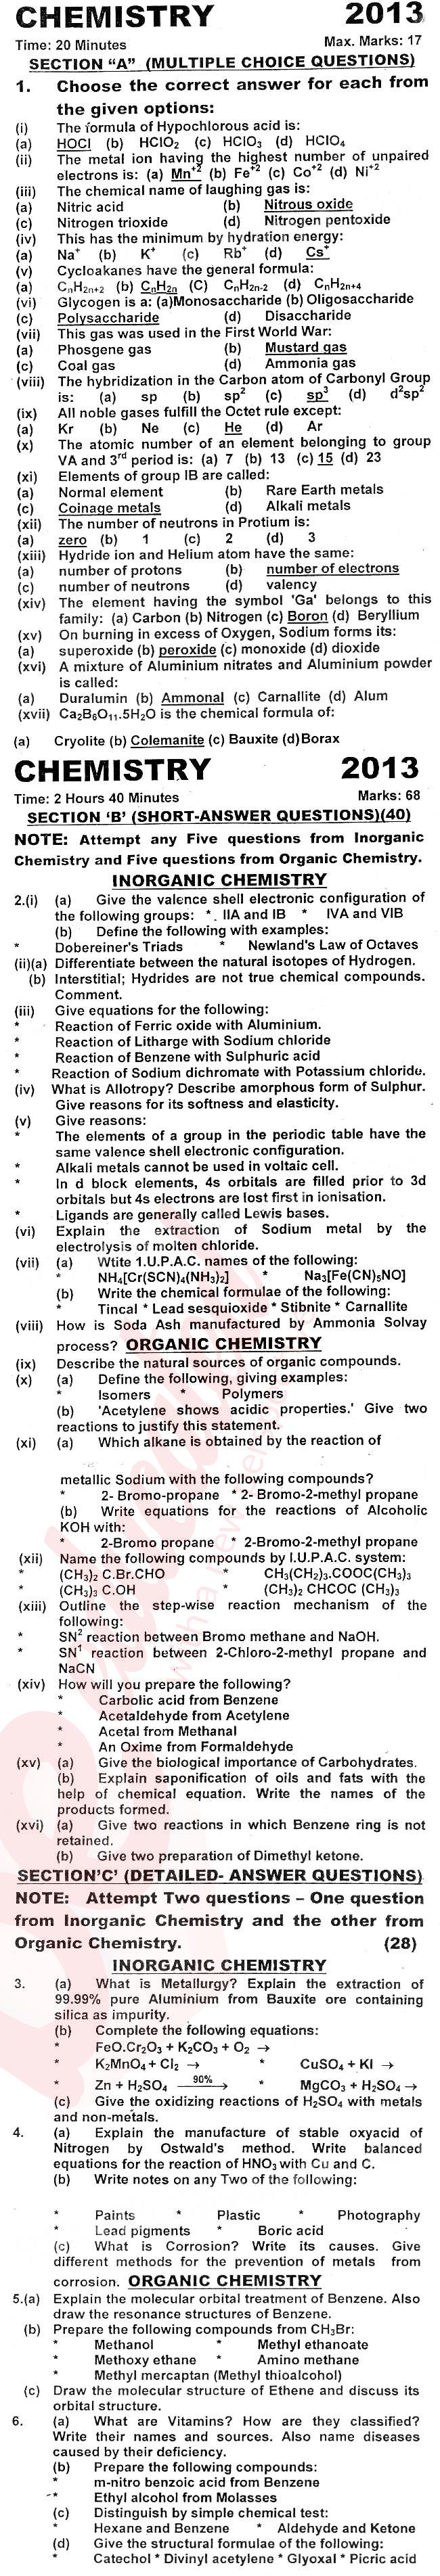 Chemistry FSC Part 2 Past Paper Group 1 KPBTE 2013